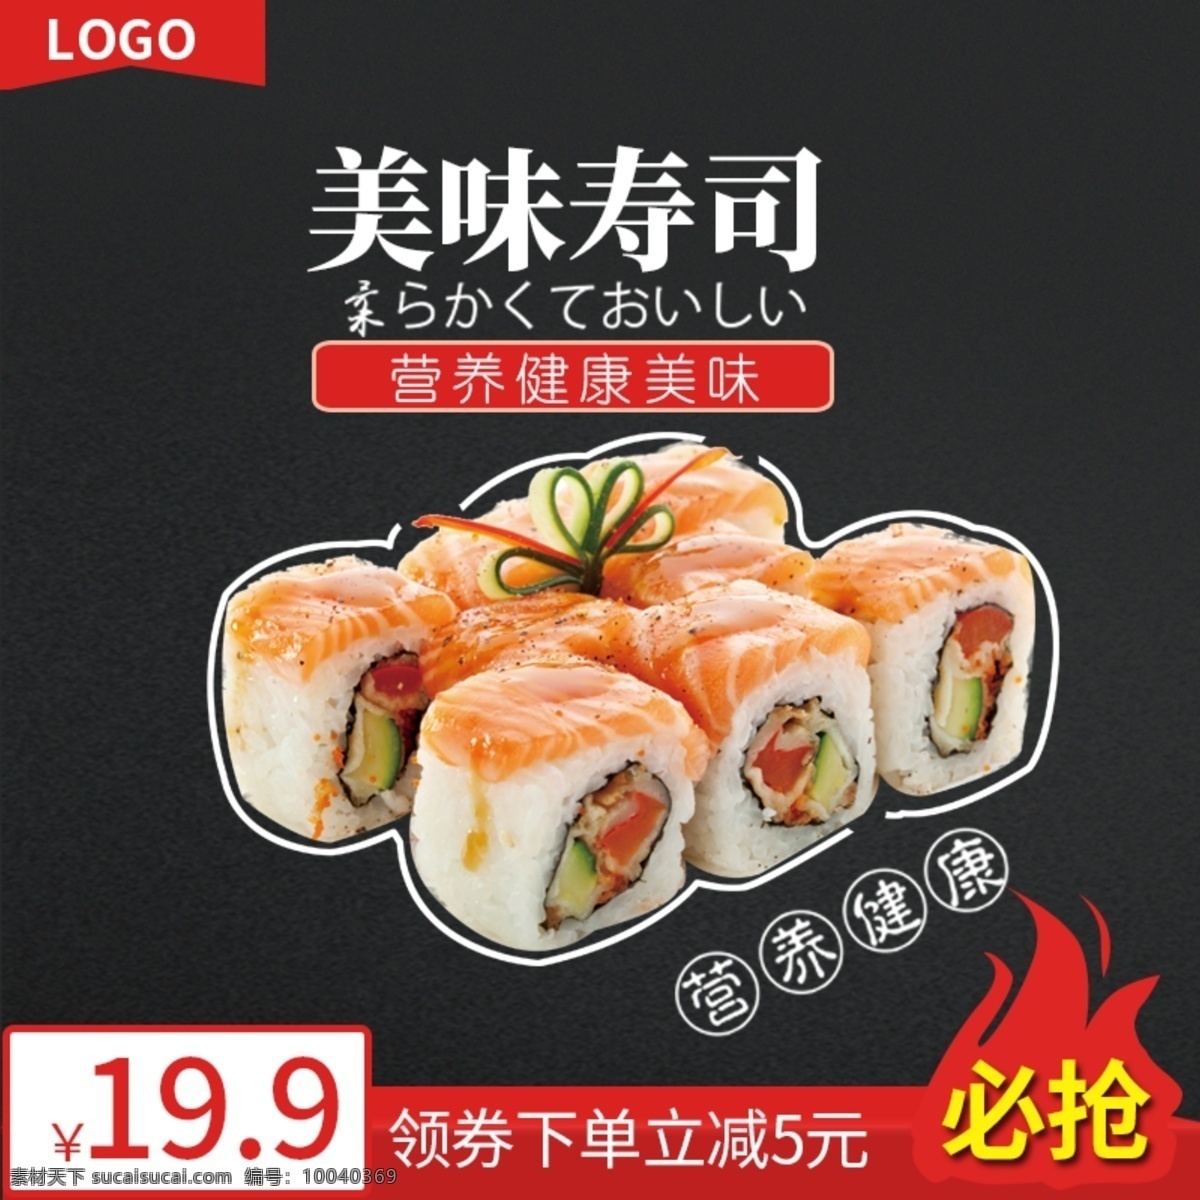 淘宝 零食 食品 日式 小吃 寿司 主 图 模板 零食主图 食品主图 小吃主图 寿司主图 美食主图